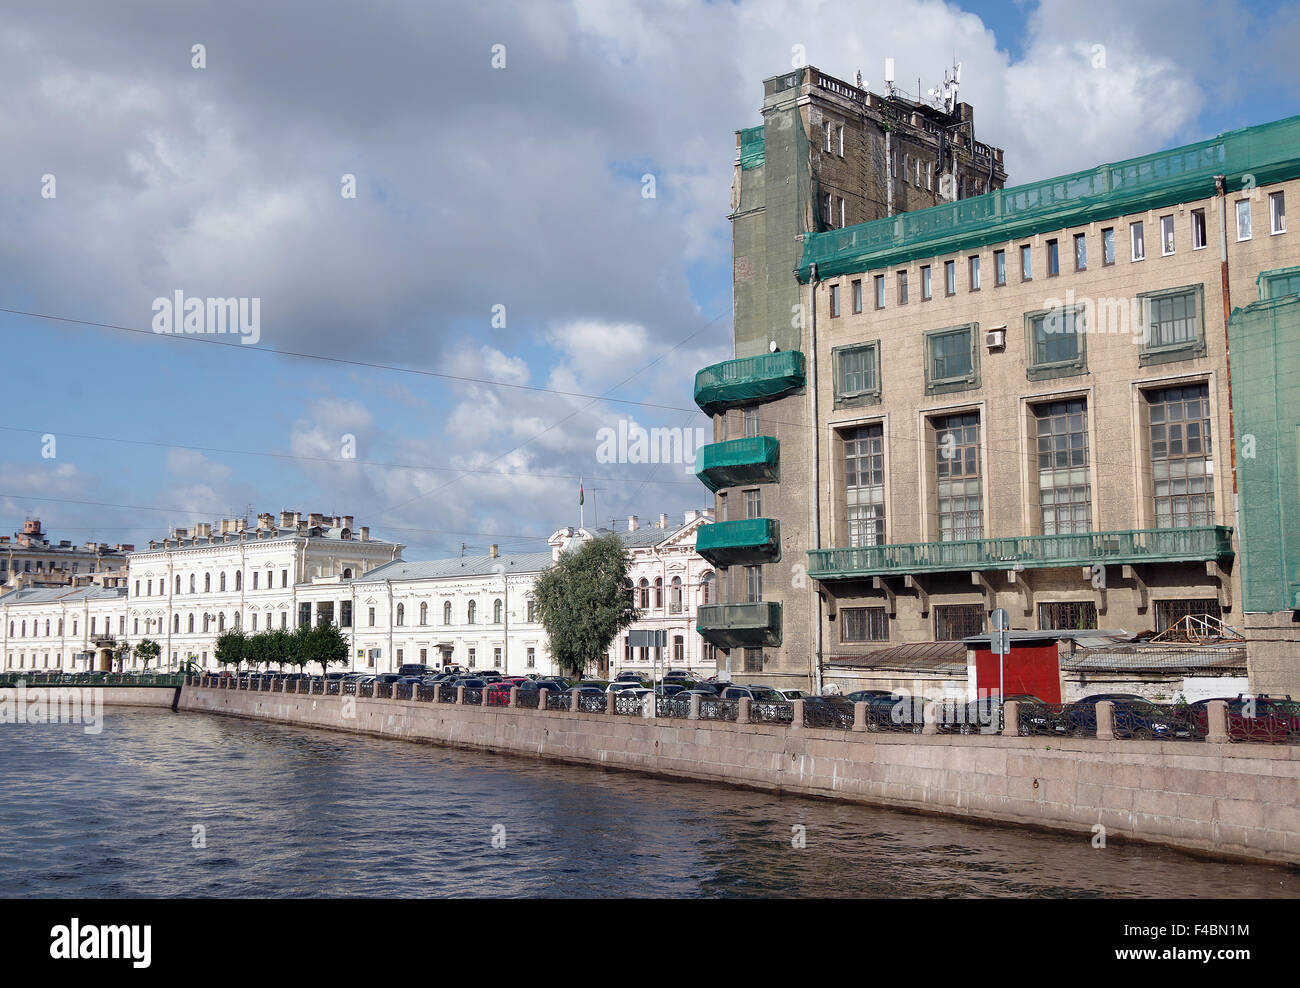 St Petersburg Constructivist building, city centre Stock Photo